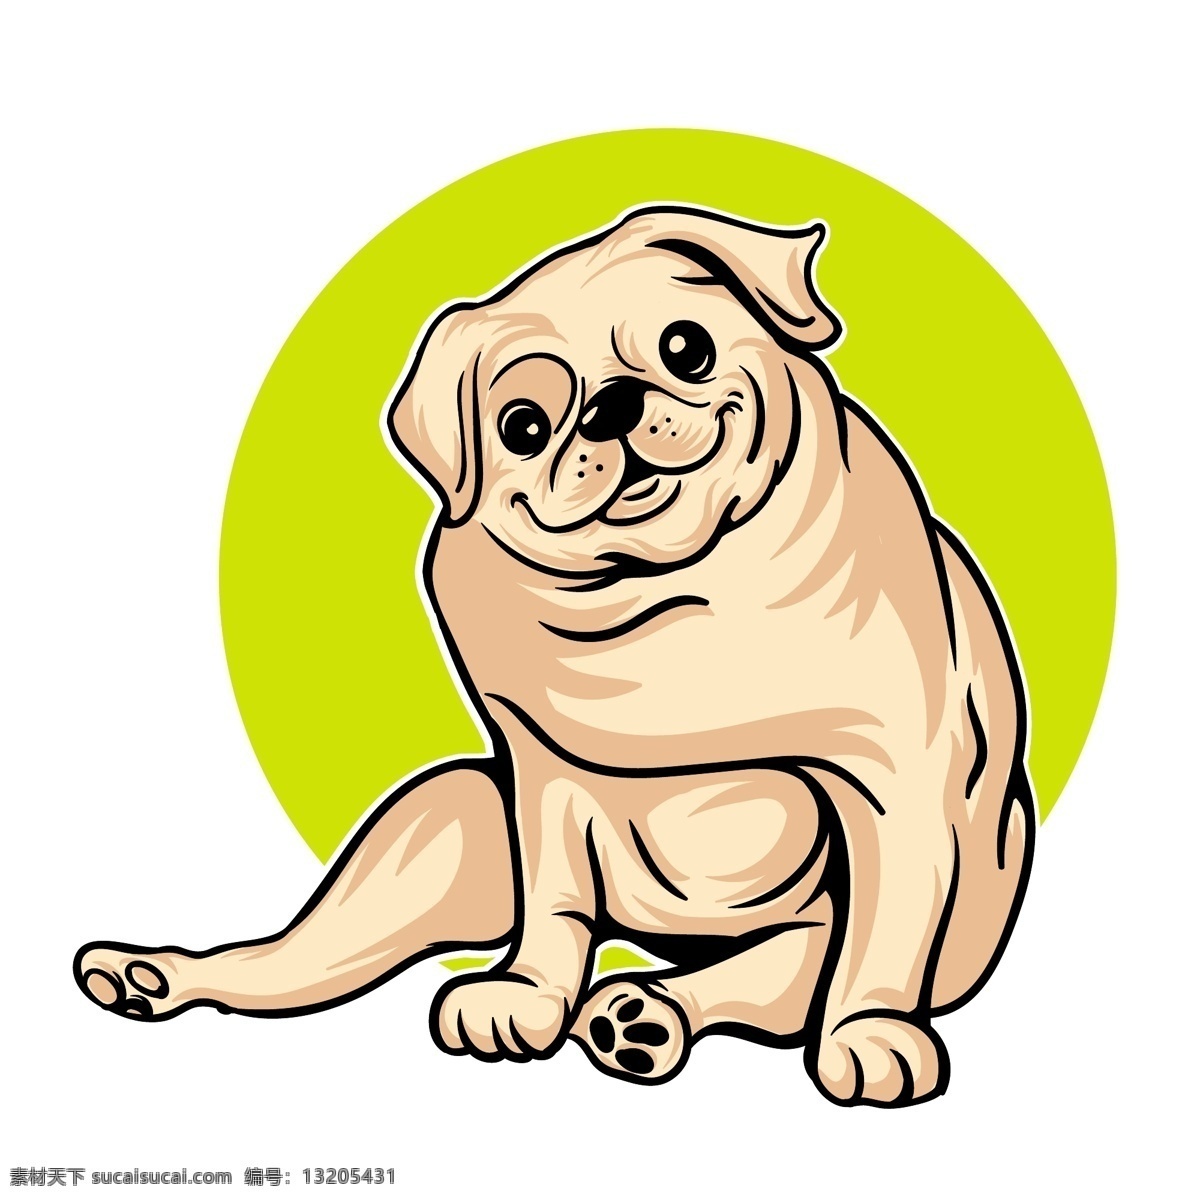 卡通狗 小狗 动物 宠物 可爱 手绘 淡彩 动物素材 卡通动物生物 卡通设计